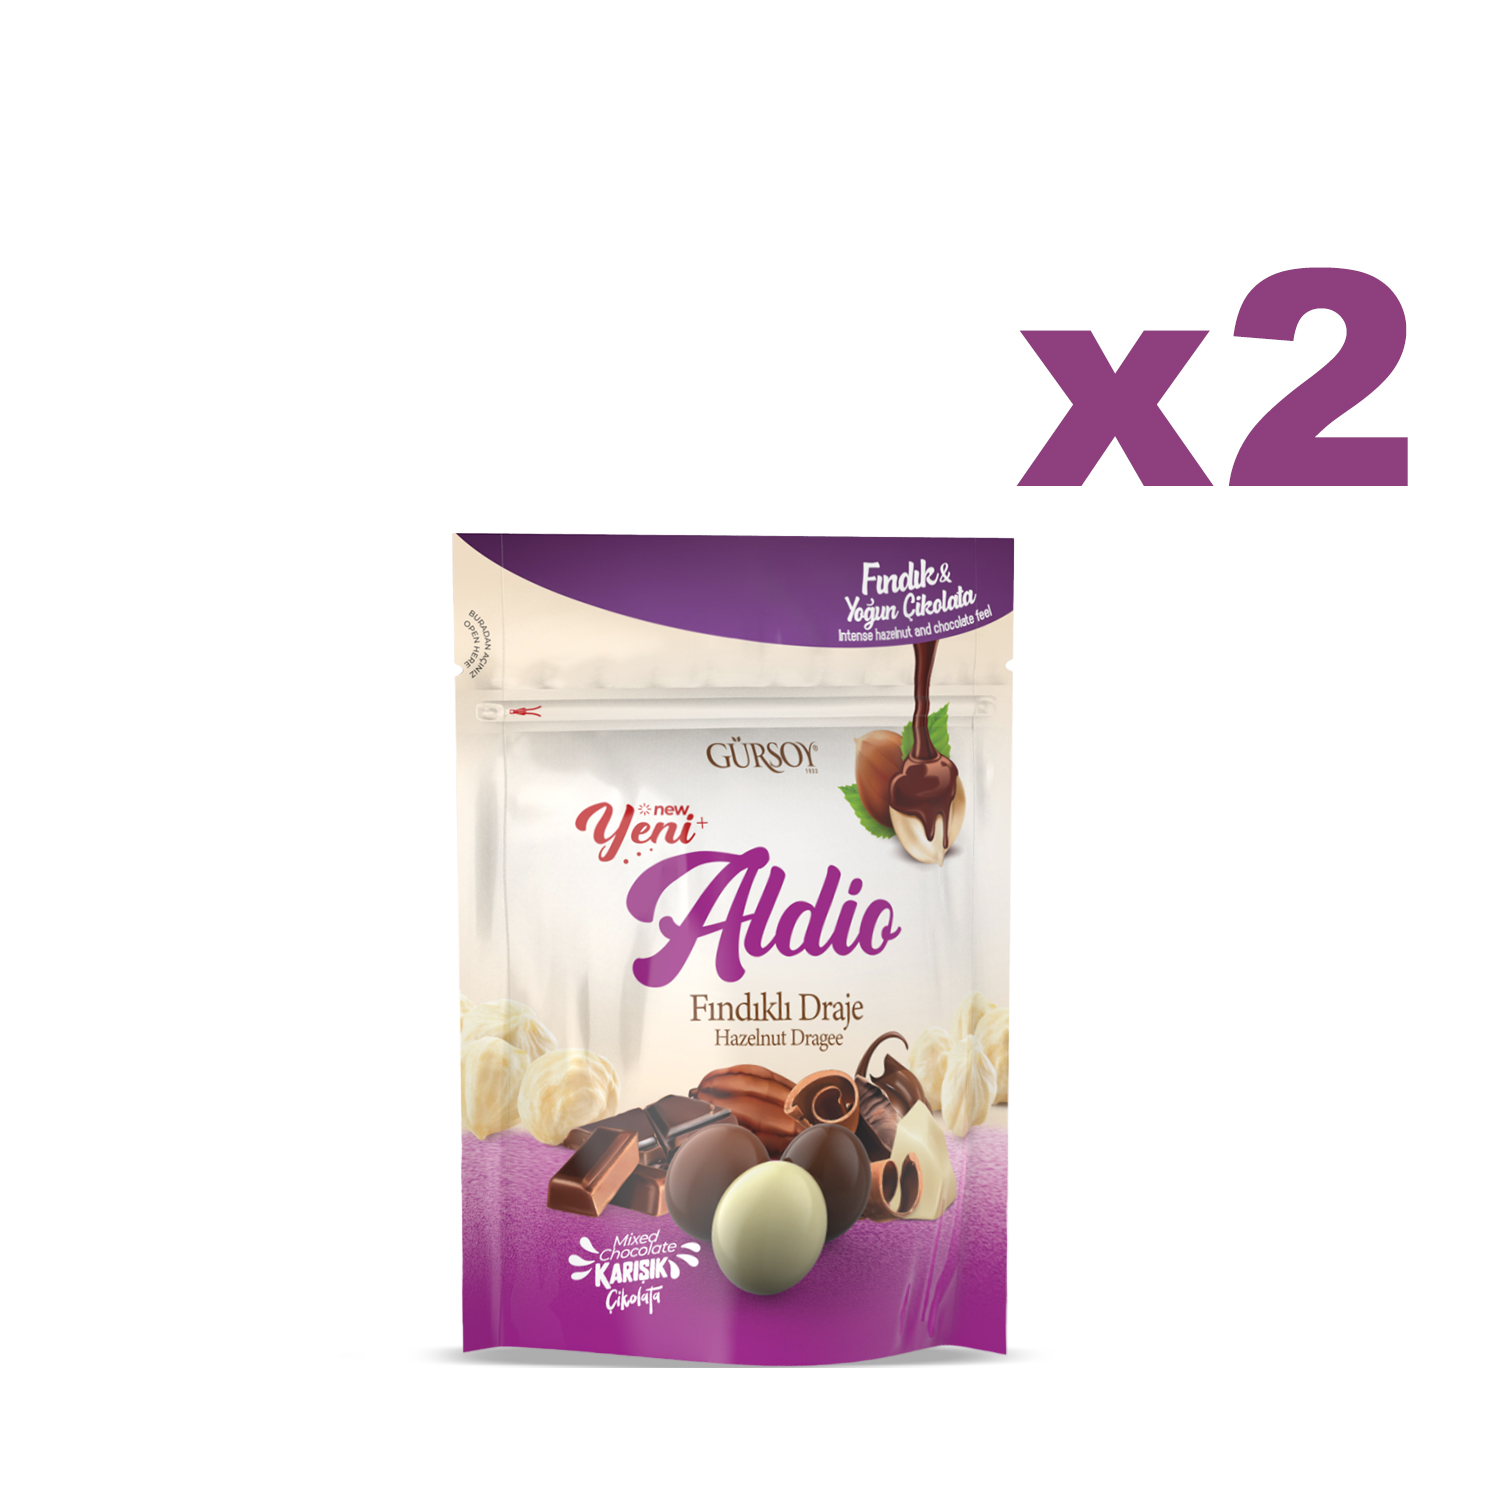 Aldio Karışık Çikolatalı Fındıklı Draje 90g X 2 Adet